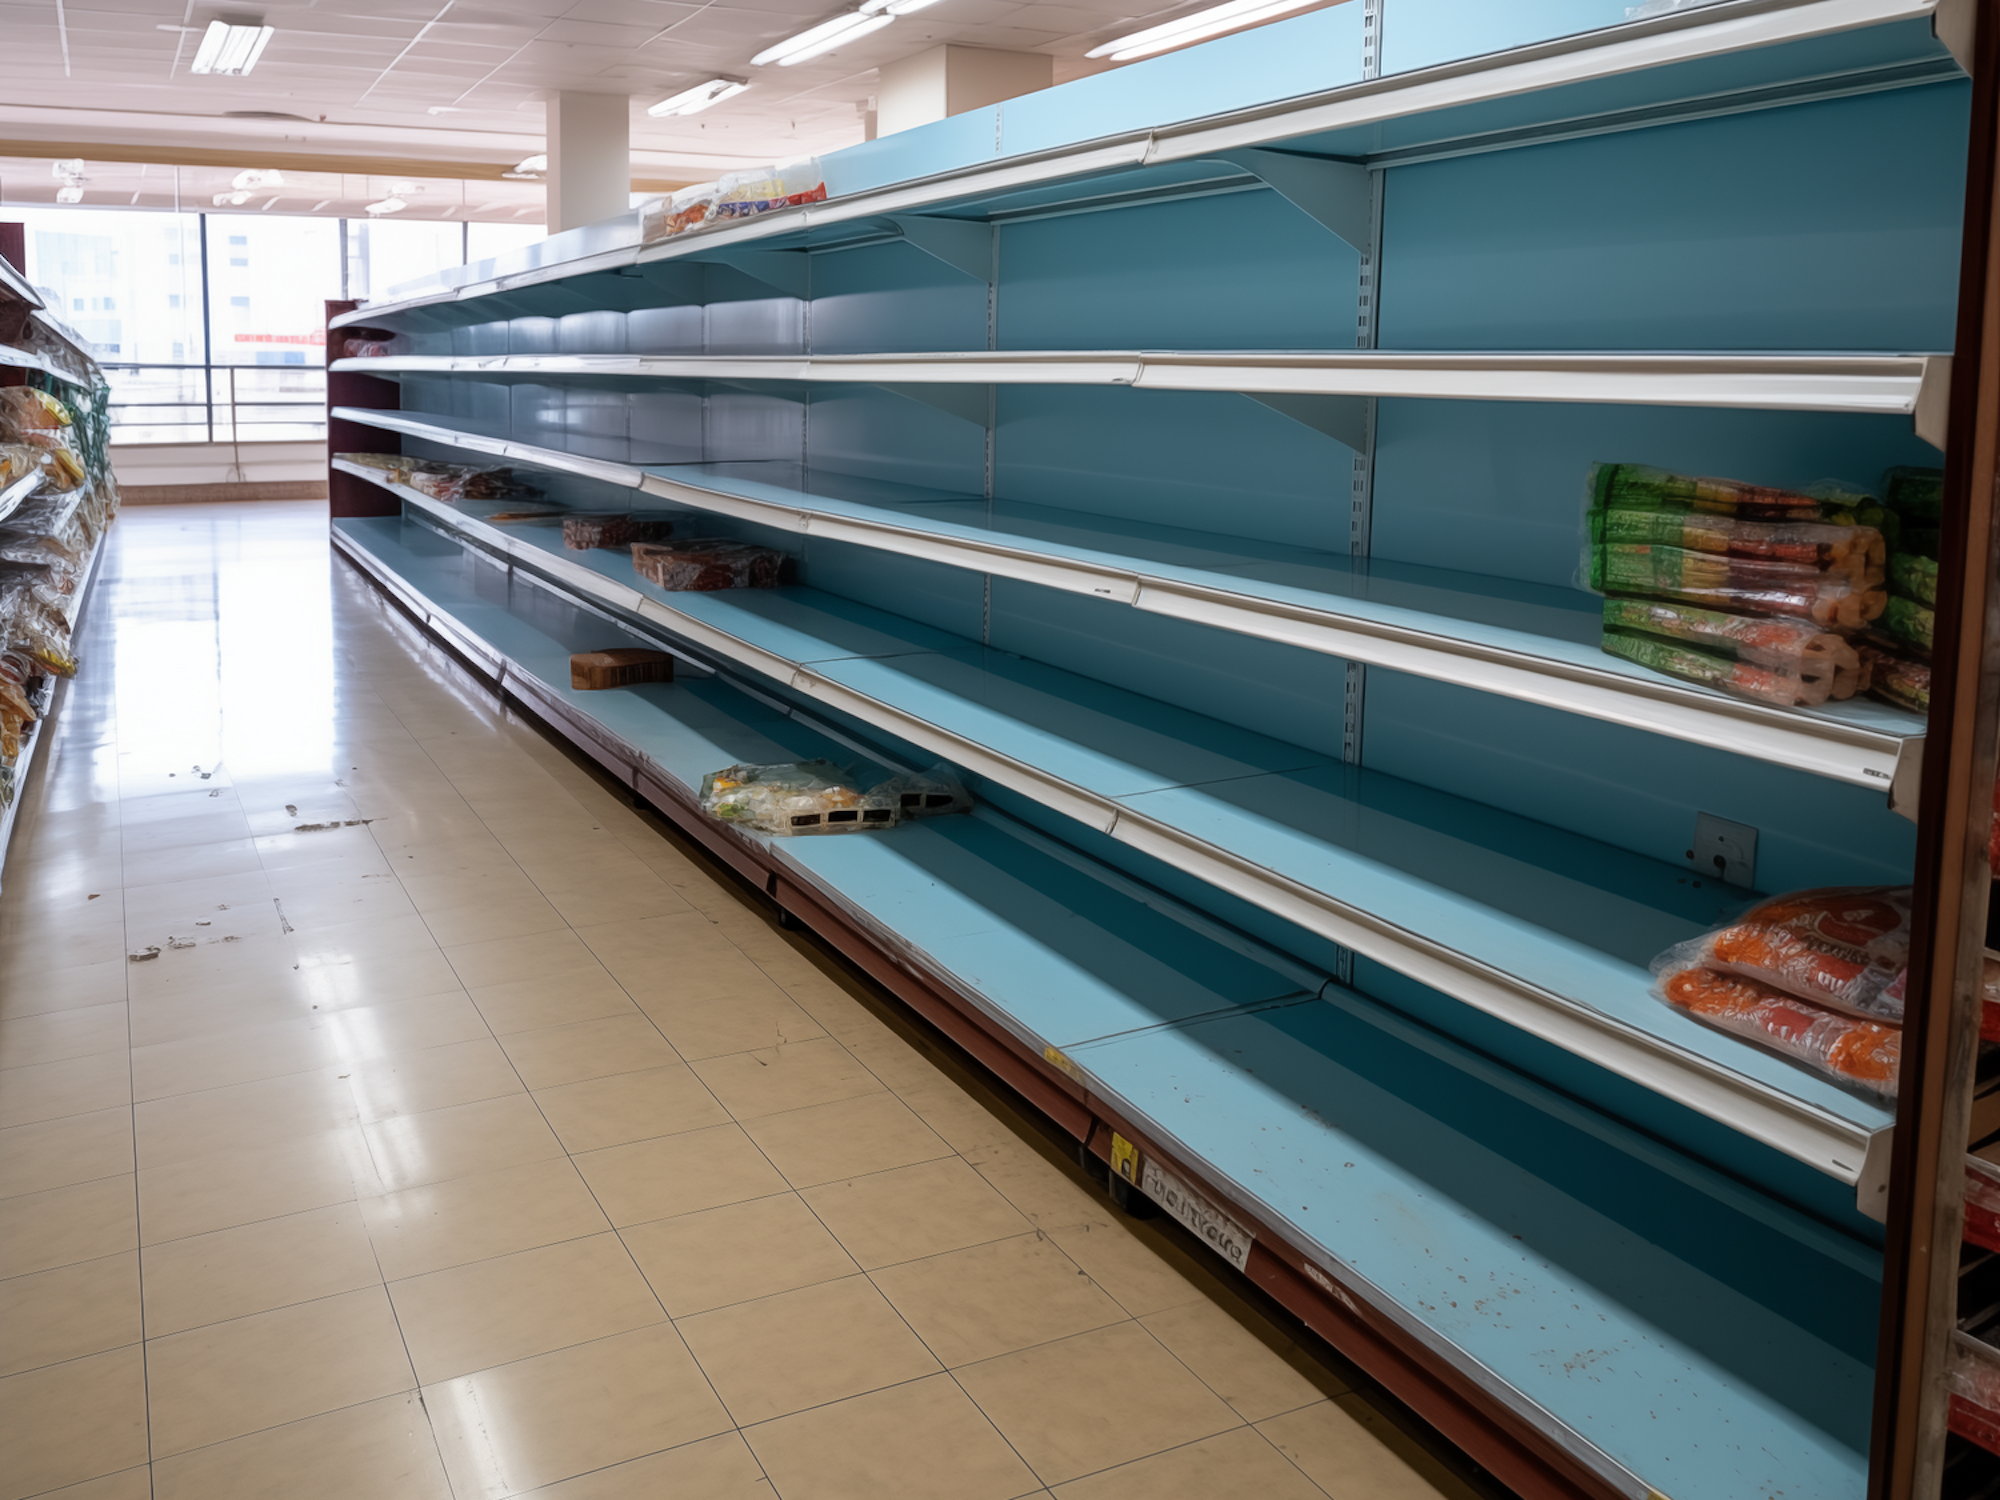 Das maschinell erstellte Bild von Midjourney zeigt ein leeres Supermarktregal.